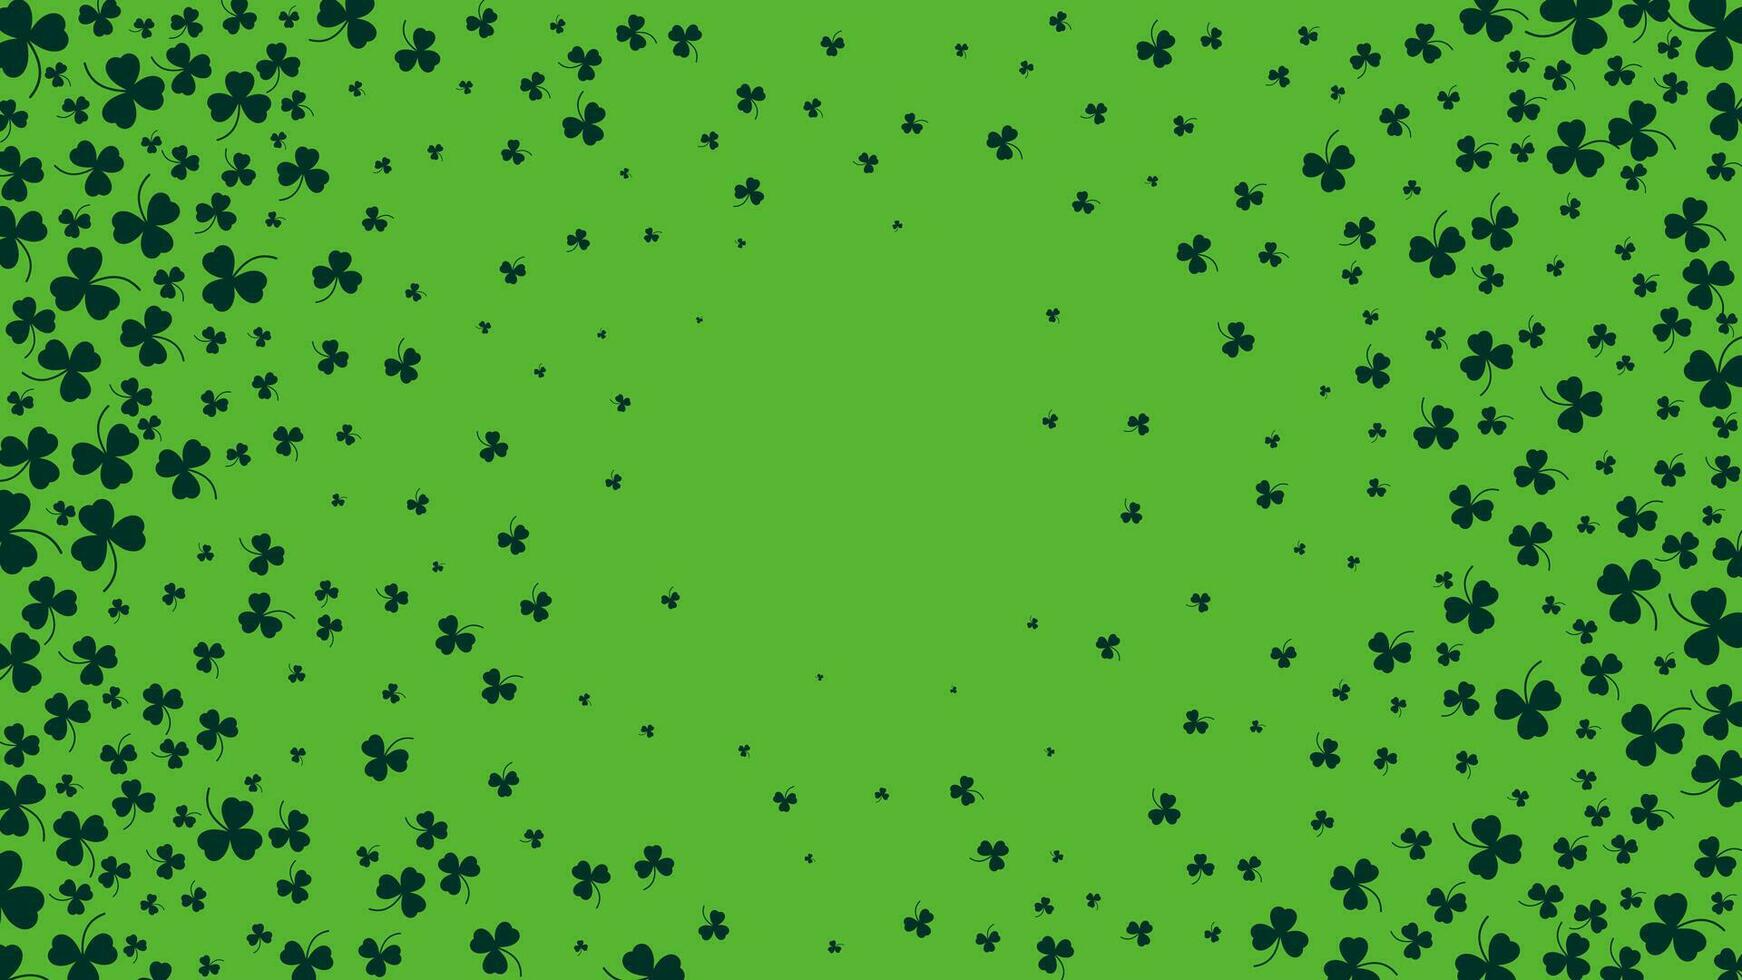 gelukkig heilige Patrick dag groen achtergrond. groen Klaver bladeren patroon. vector illustratie.